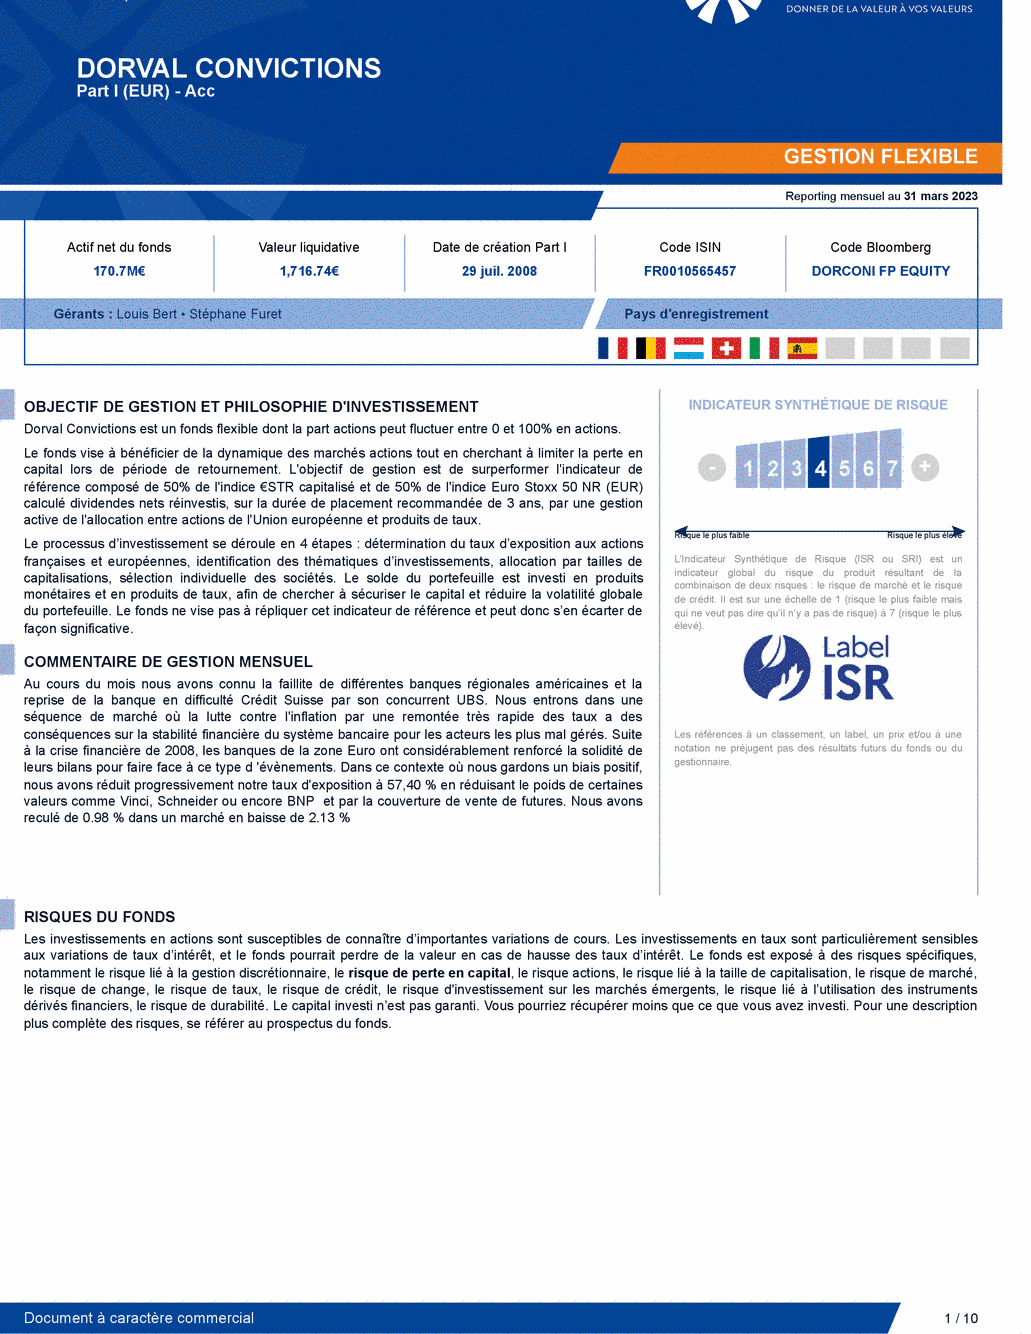 Reporting DORVAL CONVICTIONS I - 31/03/2023 - Français